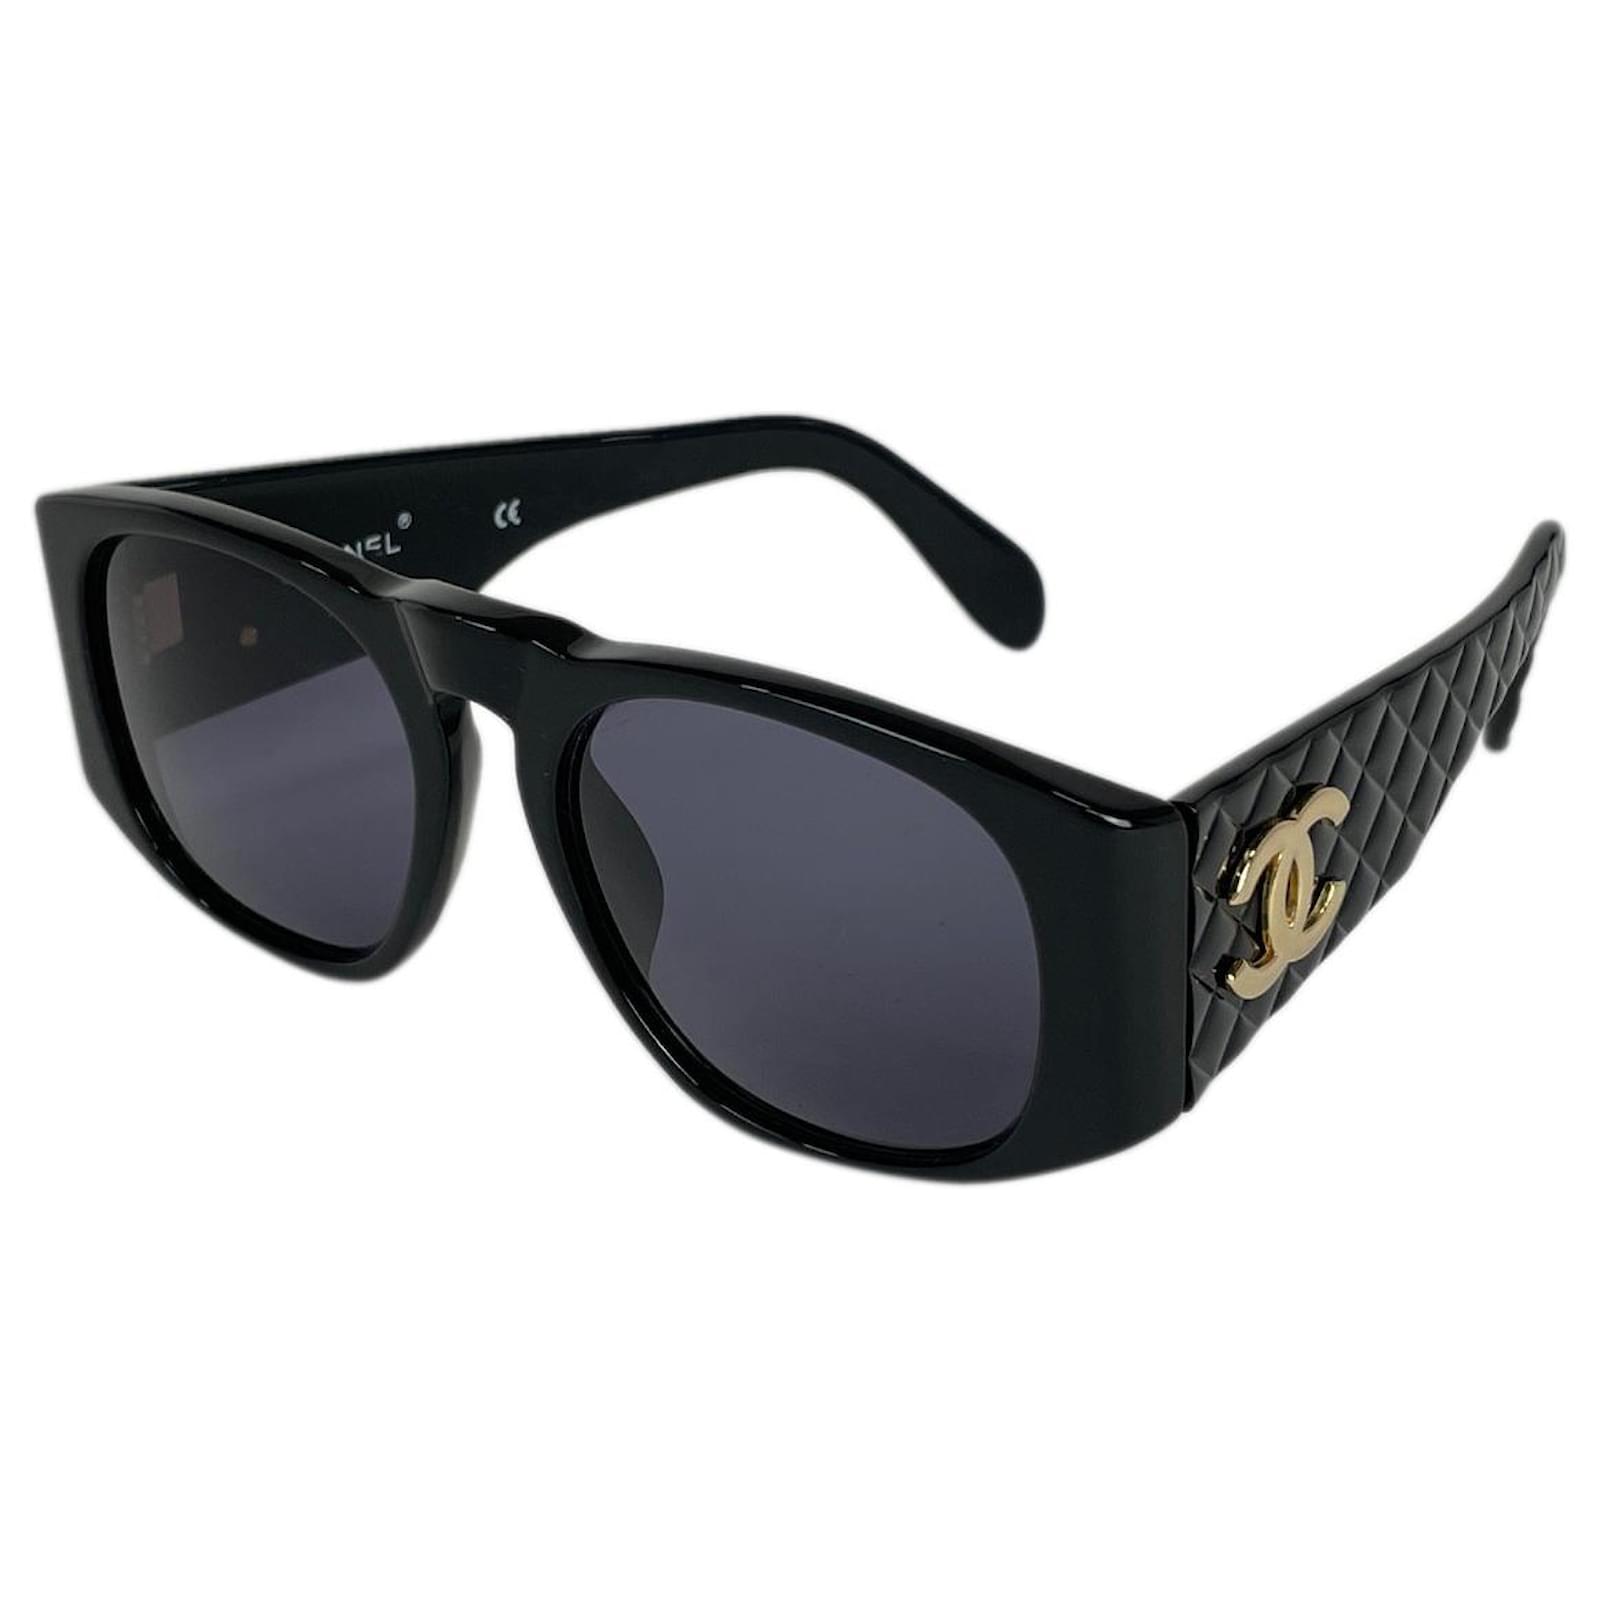 Sunglasses Chanel Black in Plastic - 32796626